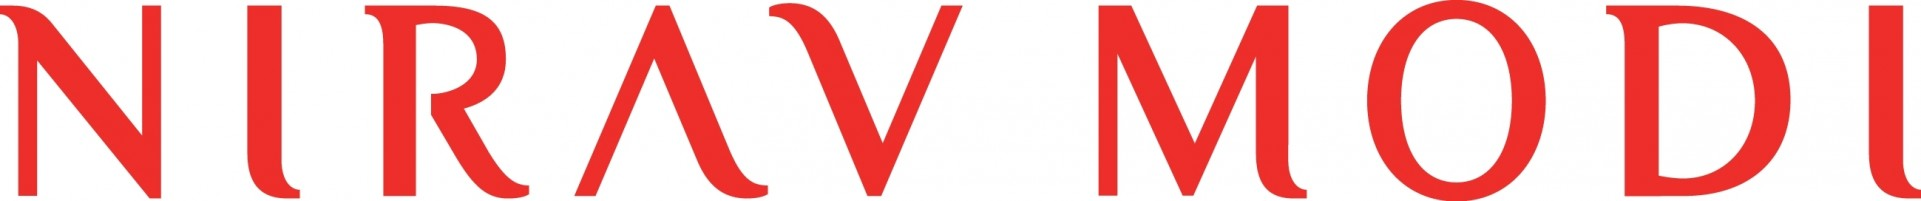 Image result for niravmodi logo